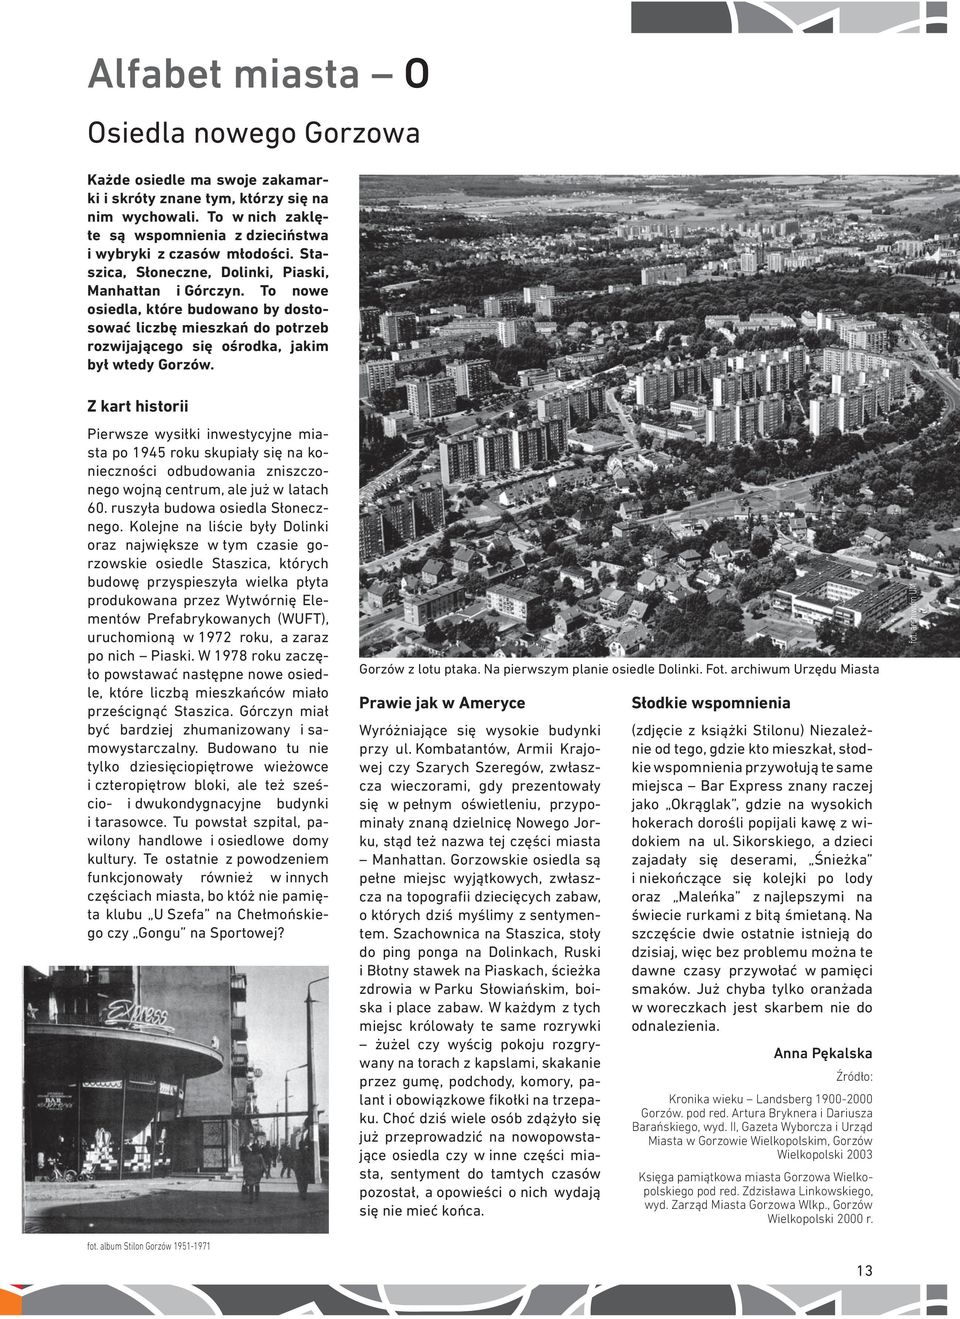 Z kart historii Pierwsze wysiłki inwestycyjne miasta po 1945 roku skupiały się na konieczności odbudowania zniszczonego wojną centrum, ale już w latach 60. ruszyła budowa osiedla Słonecznego.